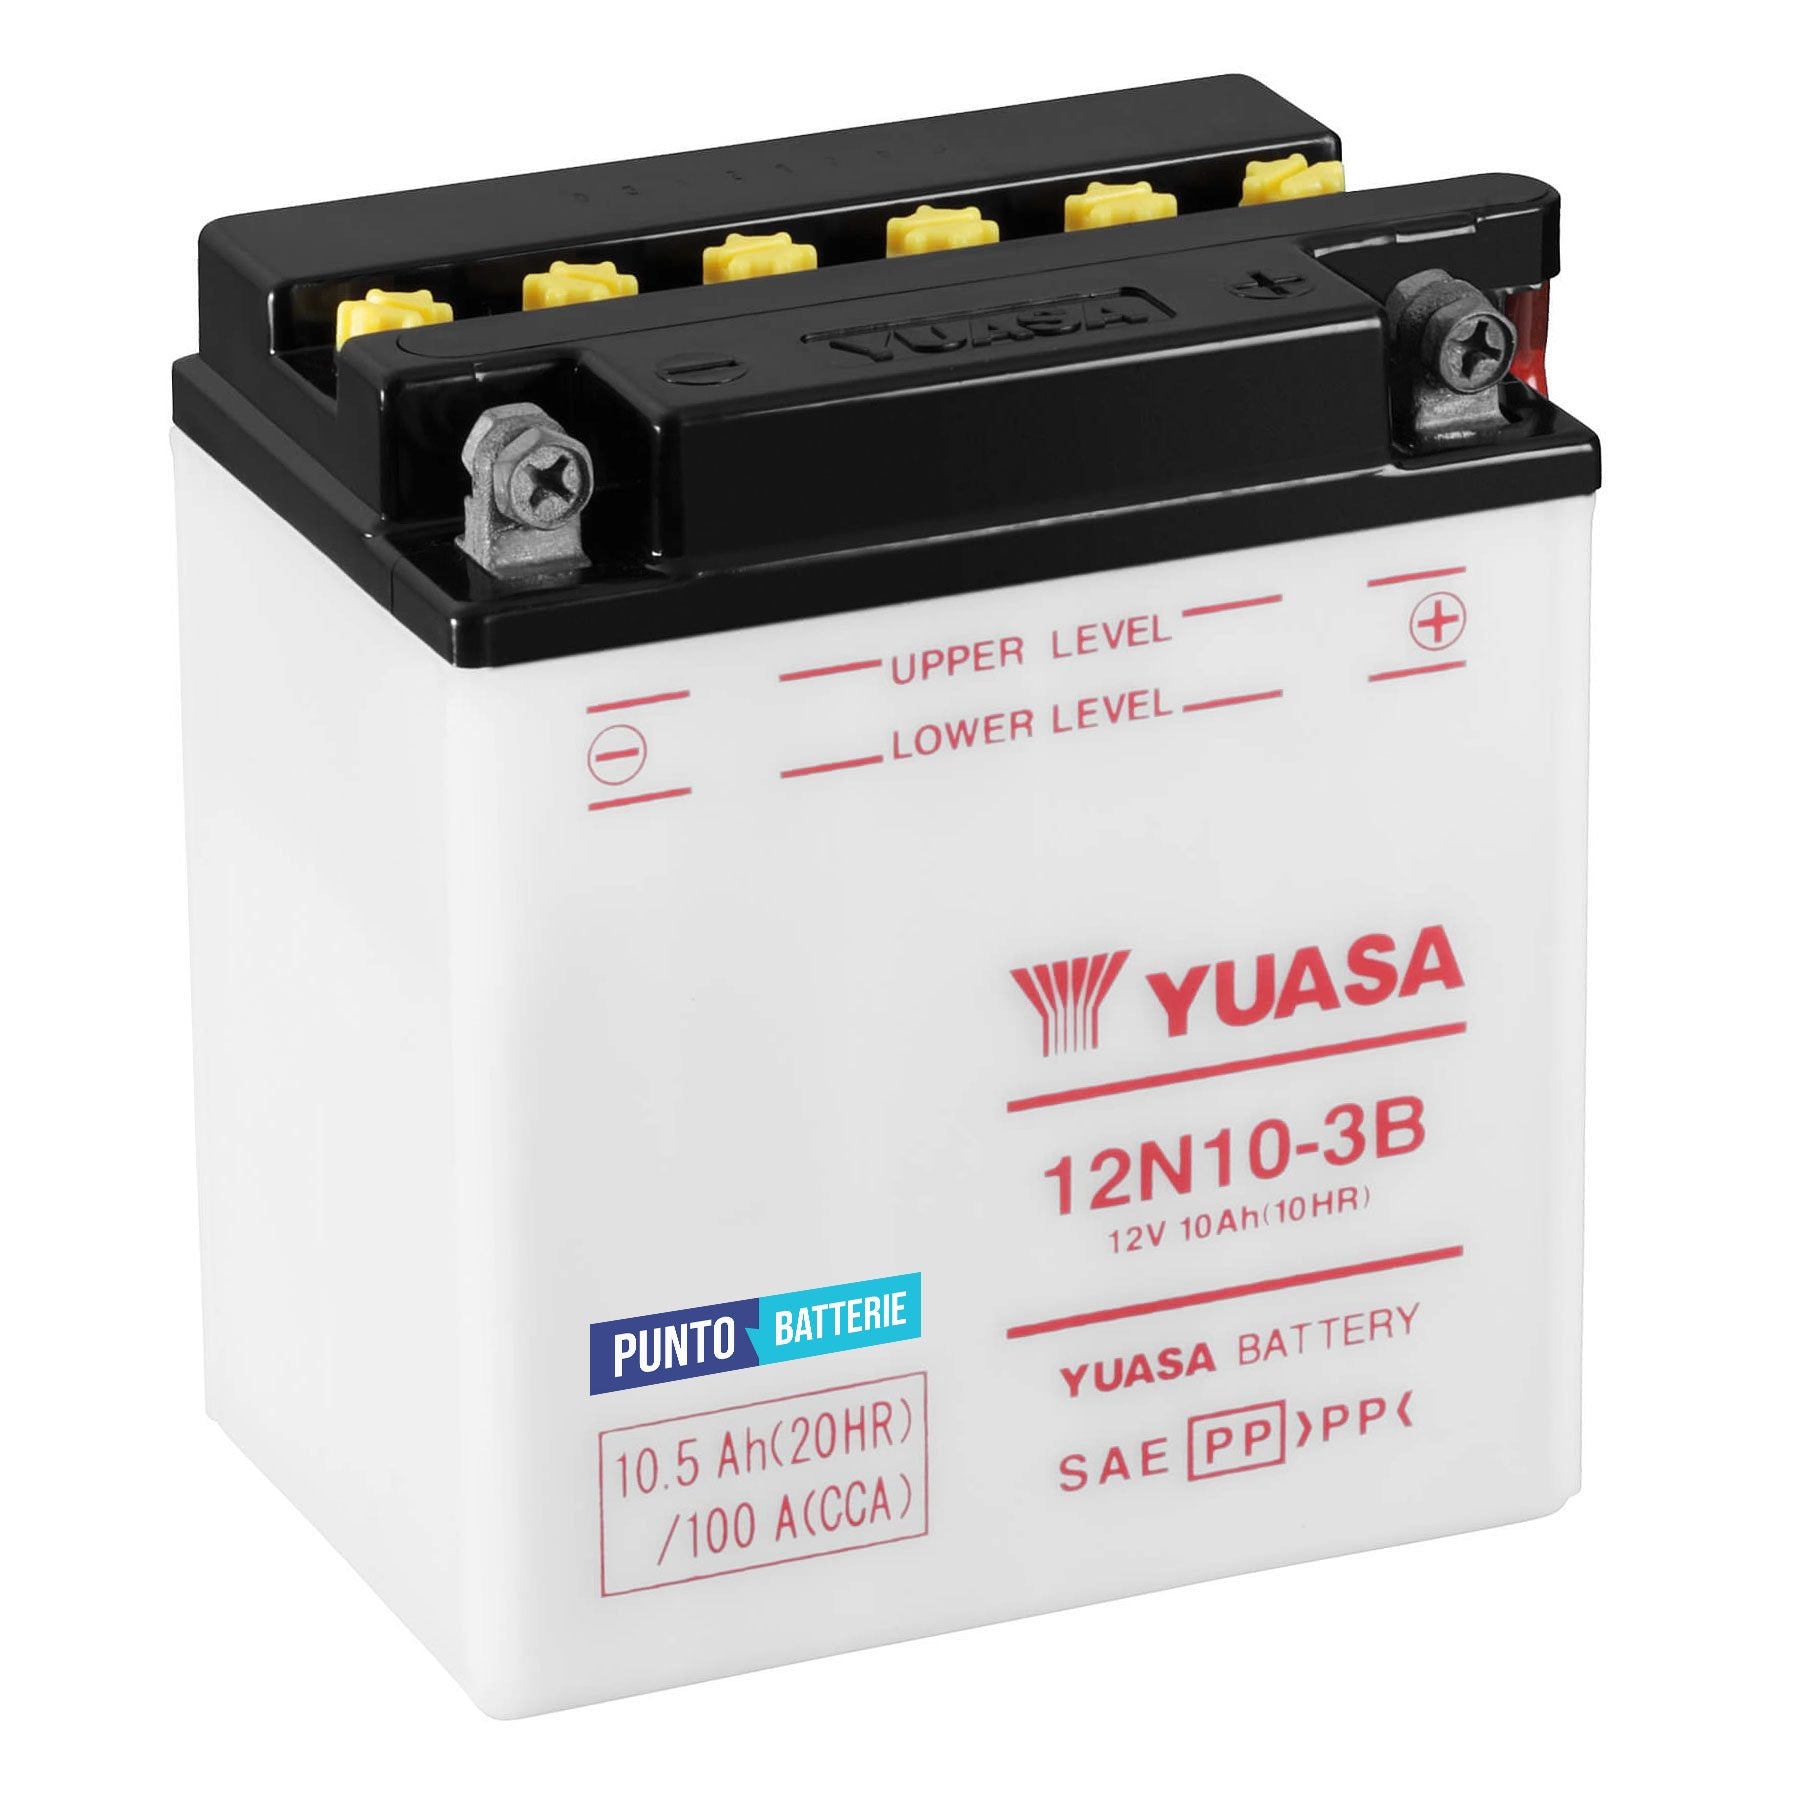 Batteria originale Yuasa Conventional 12N10-3B, dimensioni 136 x 92 x 146, polo positivo a destra, 12 volt, 10 amperora, 100 ampere. Batteria per moto, scooter e powersport.